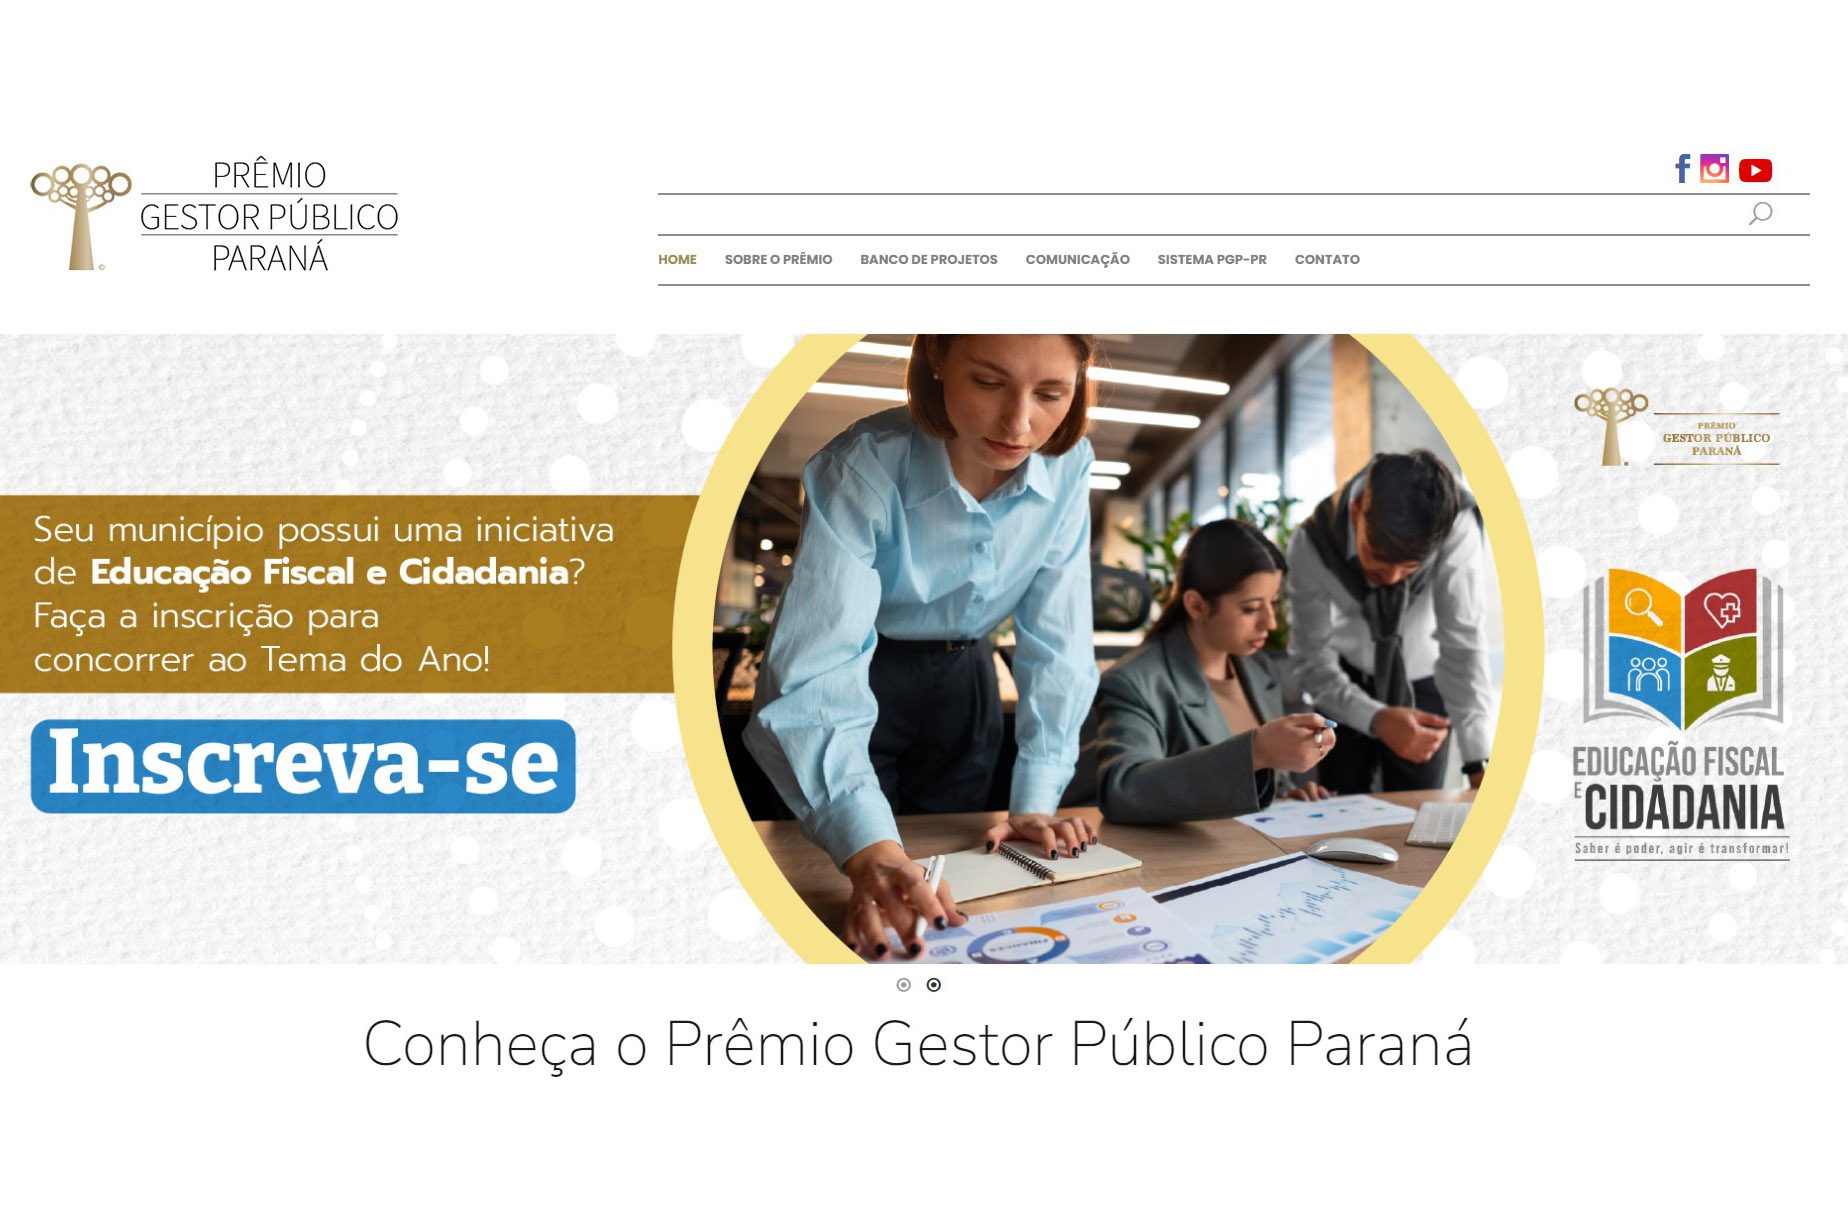 Inscrições para Prêmio Gestor Público de municípios estão abertas até 31 de maio Foto: Divulgação/Sindafep-PR. Fonte: Paraná Governo Do Estado